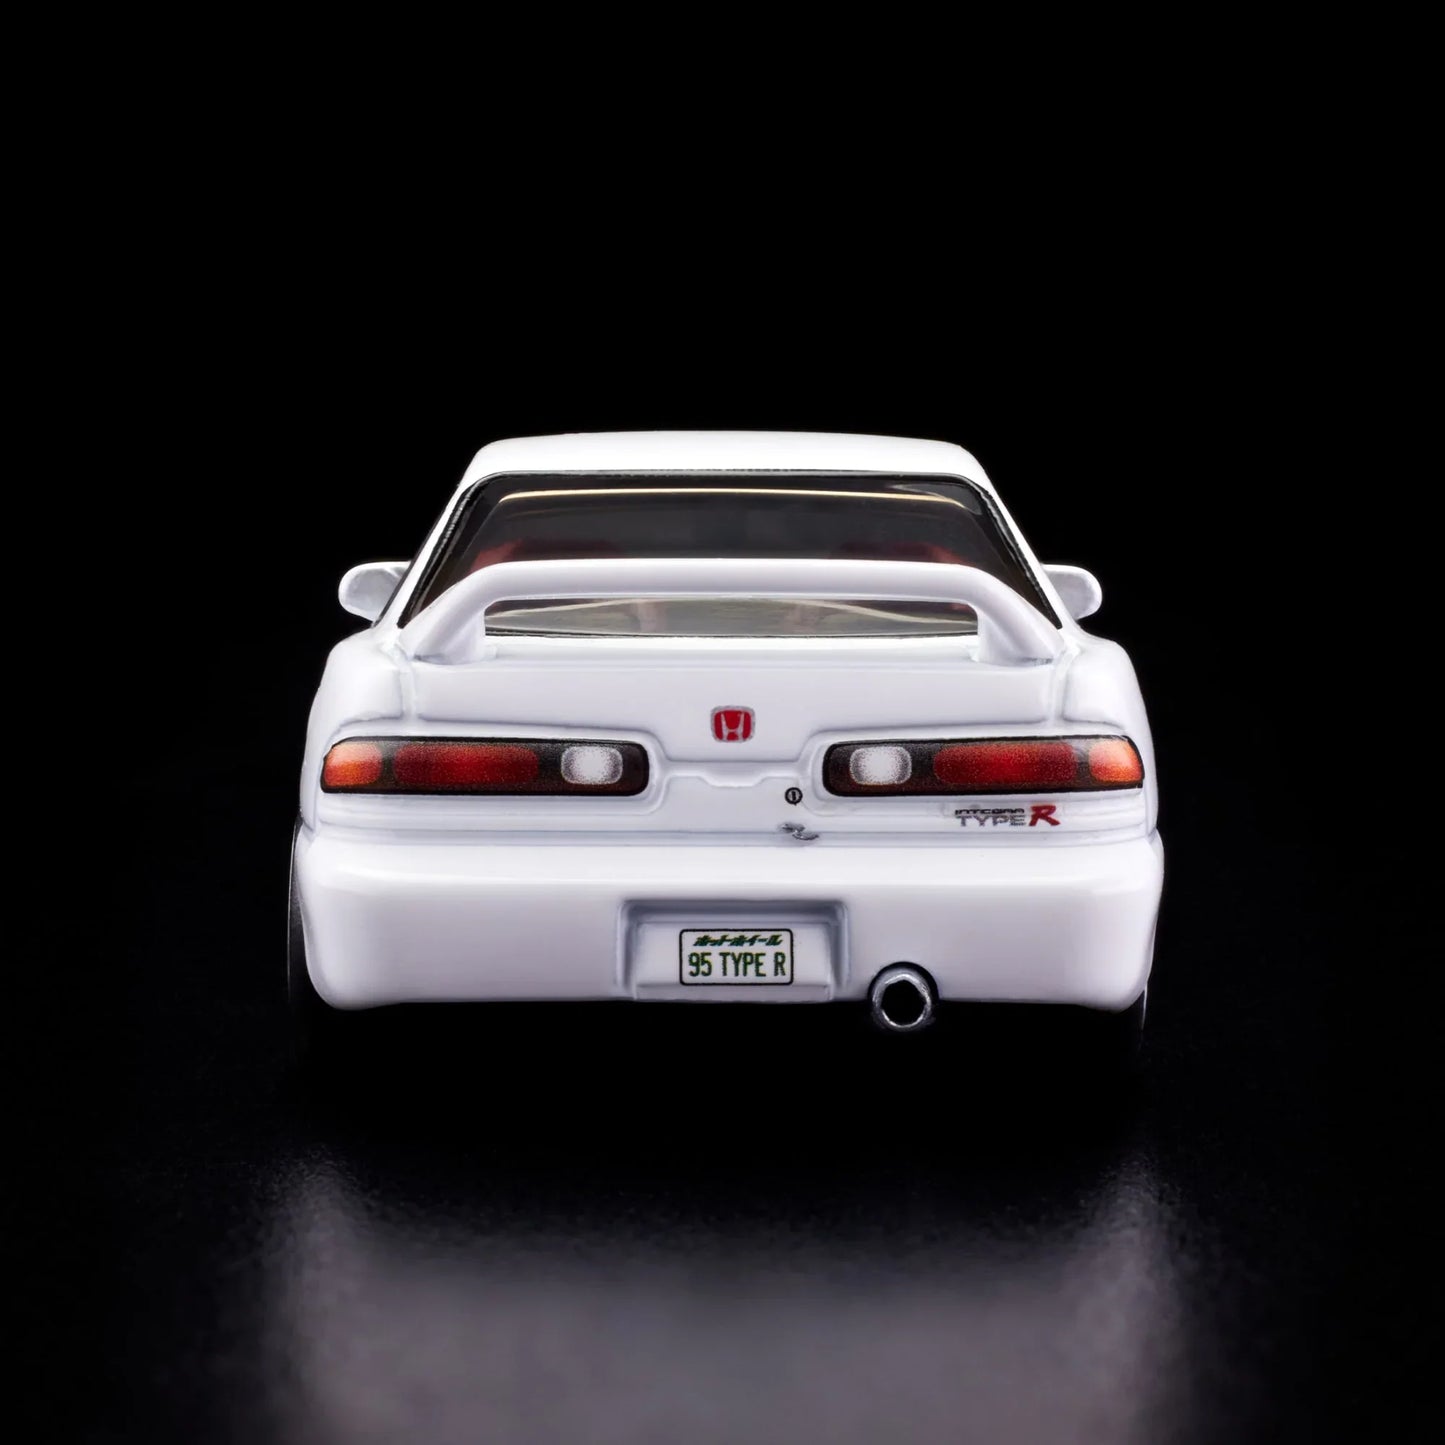 Mattel Creations: Hot Wheels Collectors - RLC Exclusive 1995 Honda Integra Type R